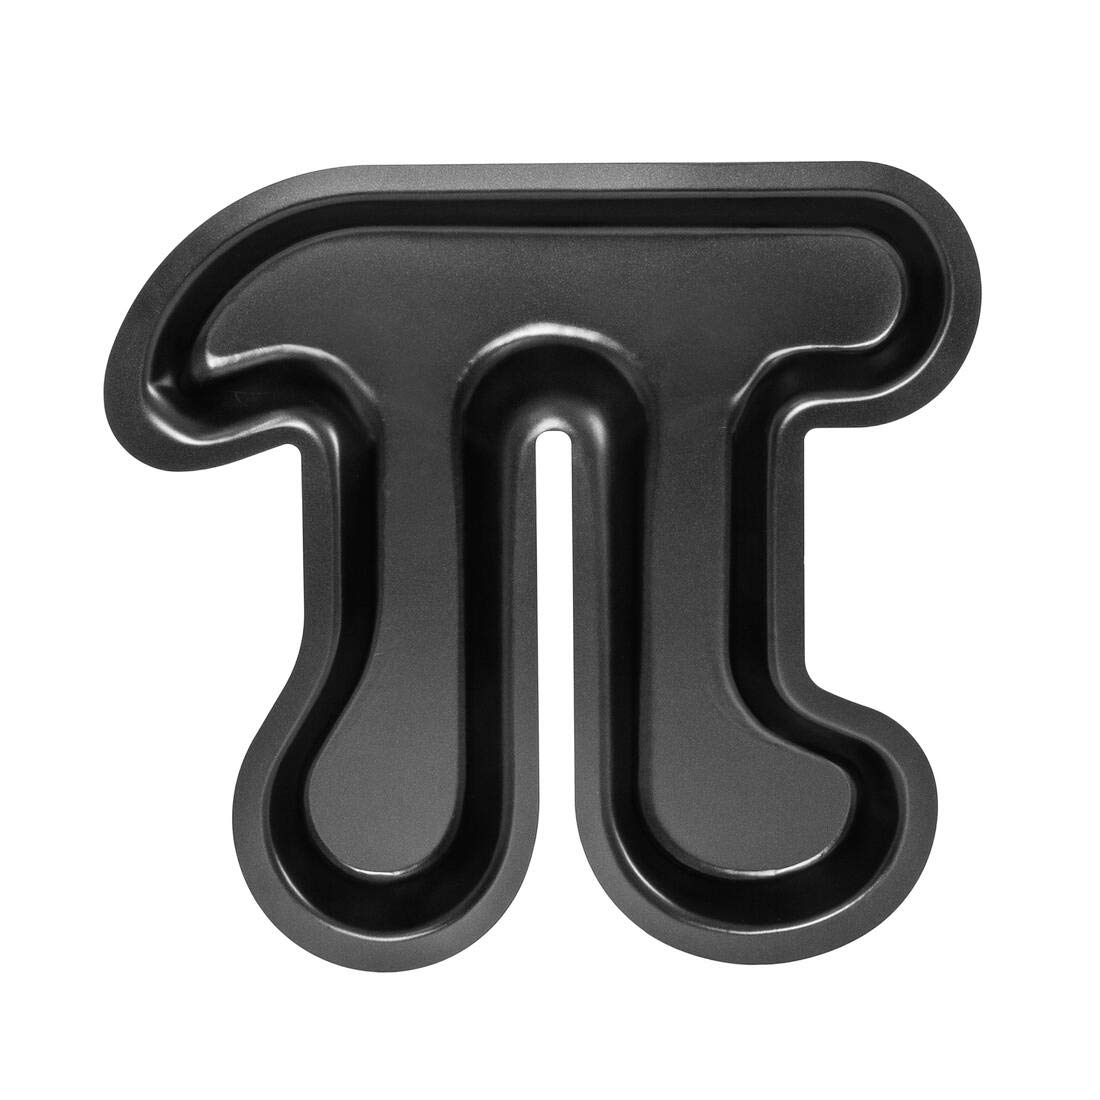 getDigital Pi Kuchenform - Metall-Backform mit Antihaft-Beschichtung für Nerds, Naturwissenschaftler und Mathe Geeks in Form des Symbols der Kreiszahl Pi - Kuchen Backform